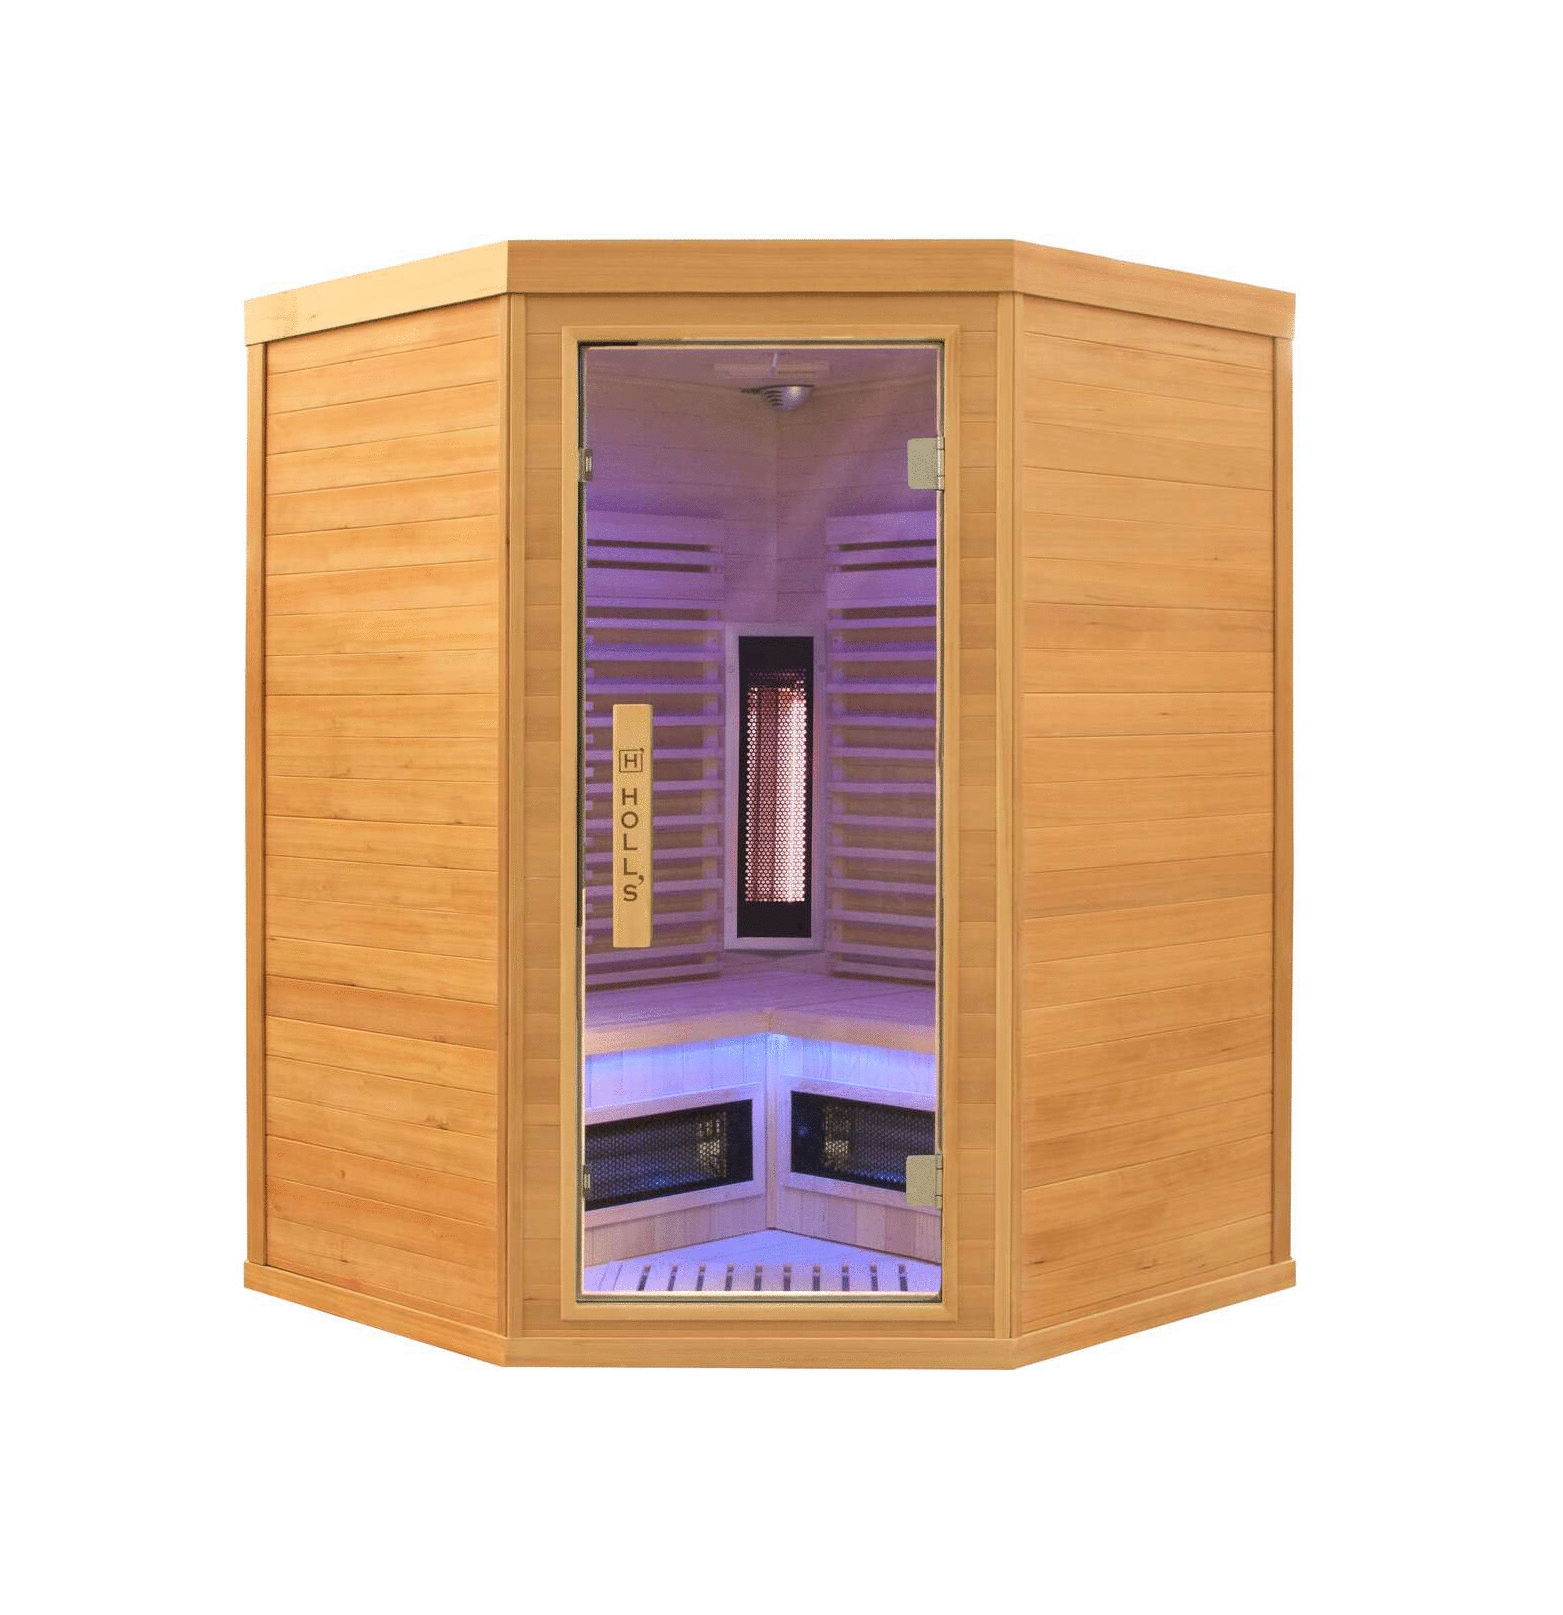 Infracrvena sauna Purewave 3C (3 osobe) kutna